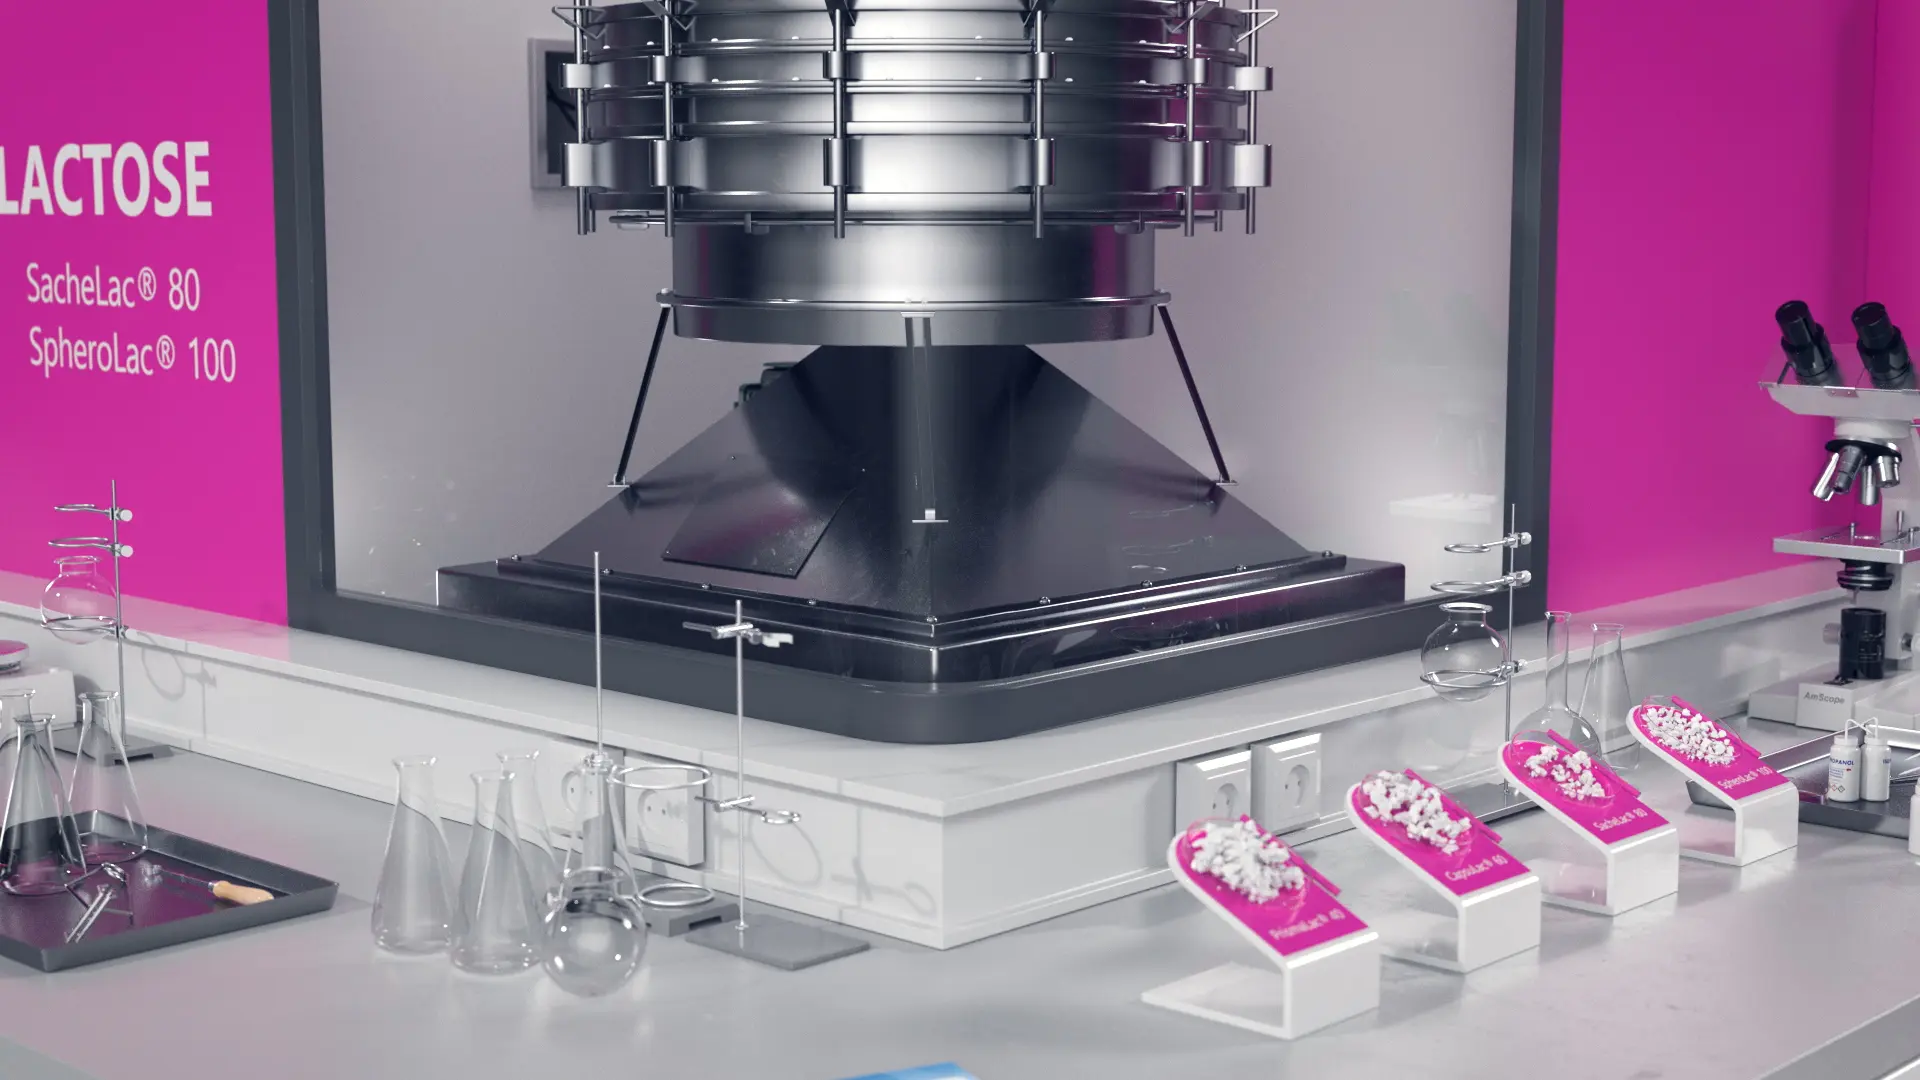 Laborausrüstung mit Laborlaktose-Produkten auf dem Tisch, Laborgeräte und Mikroskop im Hintergrund.